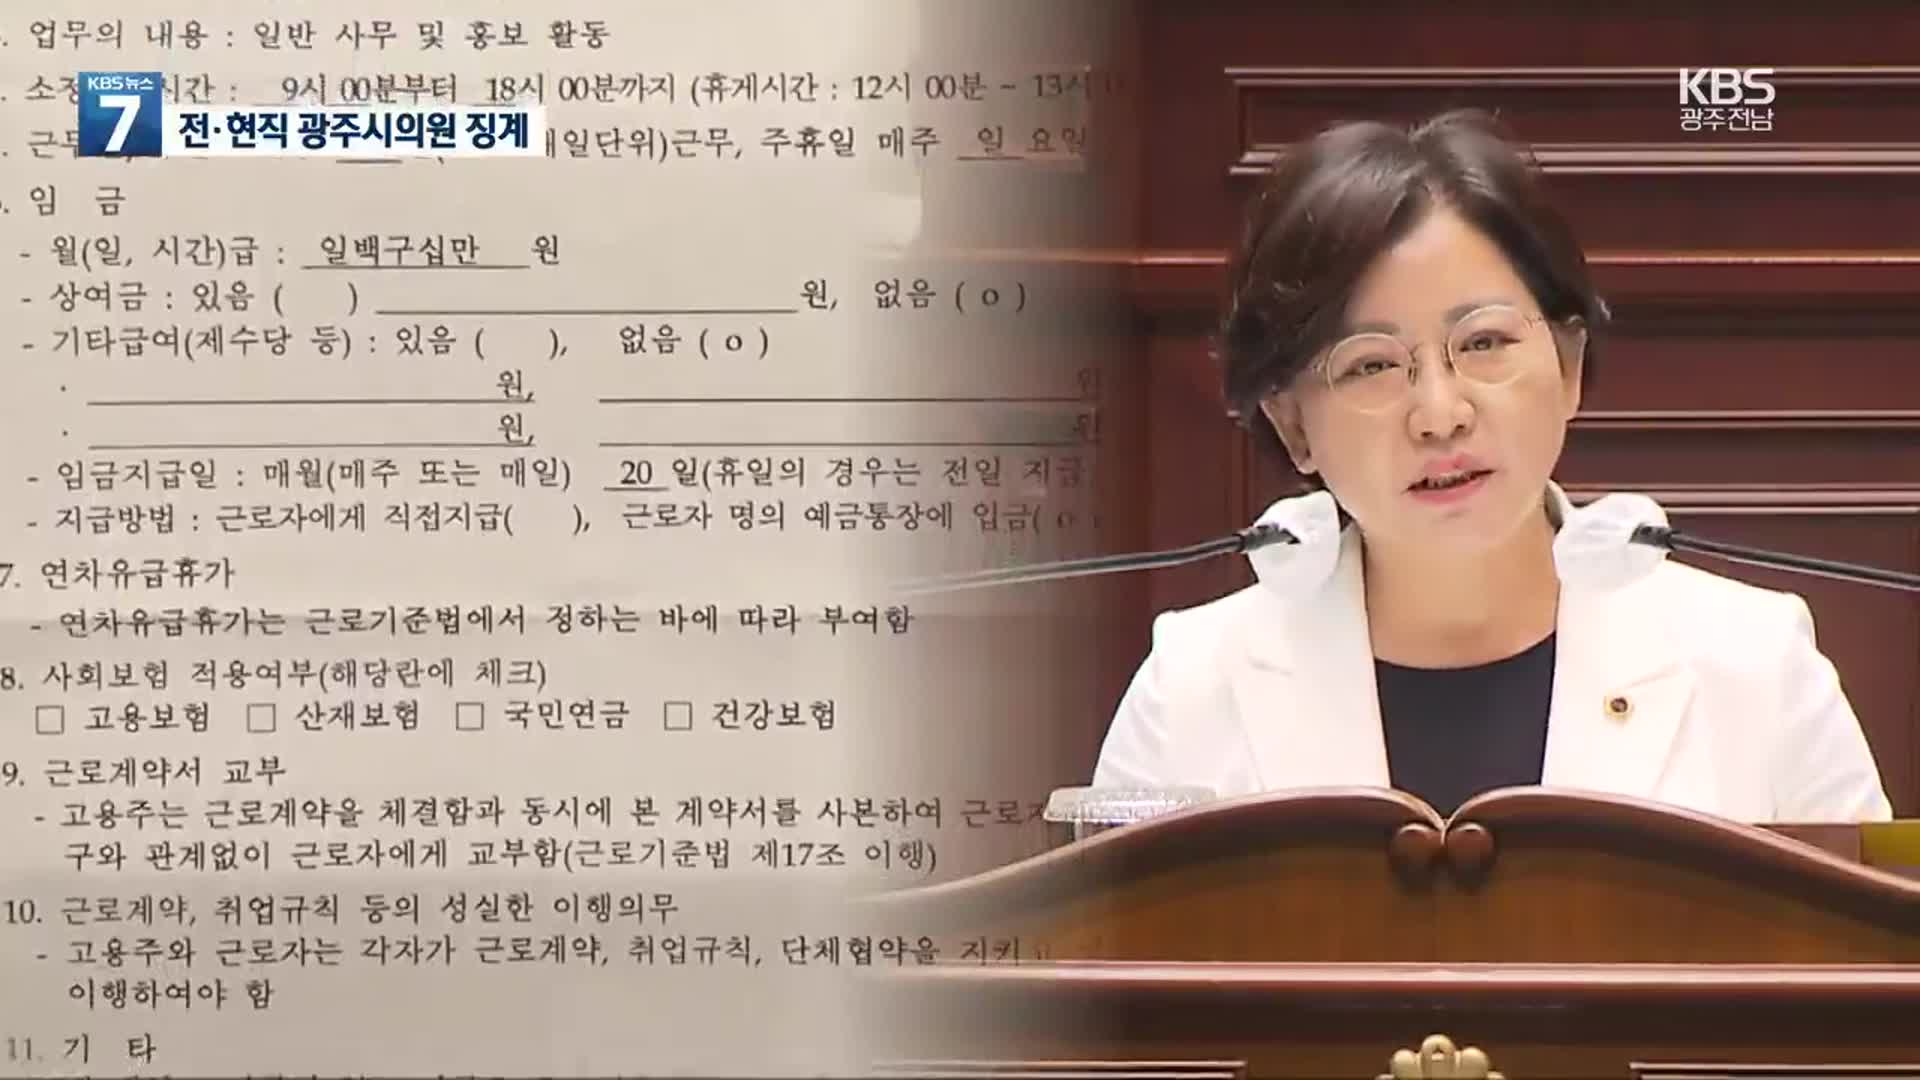 ‘뇌물’ 최영환 제명…‘최저임금법 위반’ 박미정 당직정지